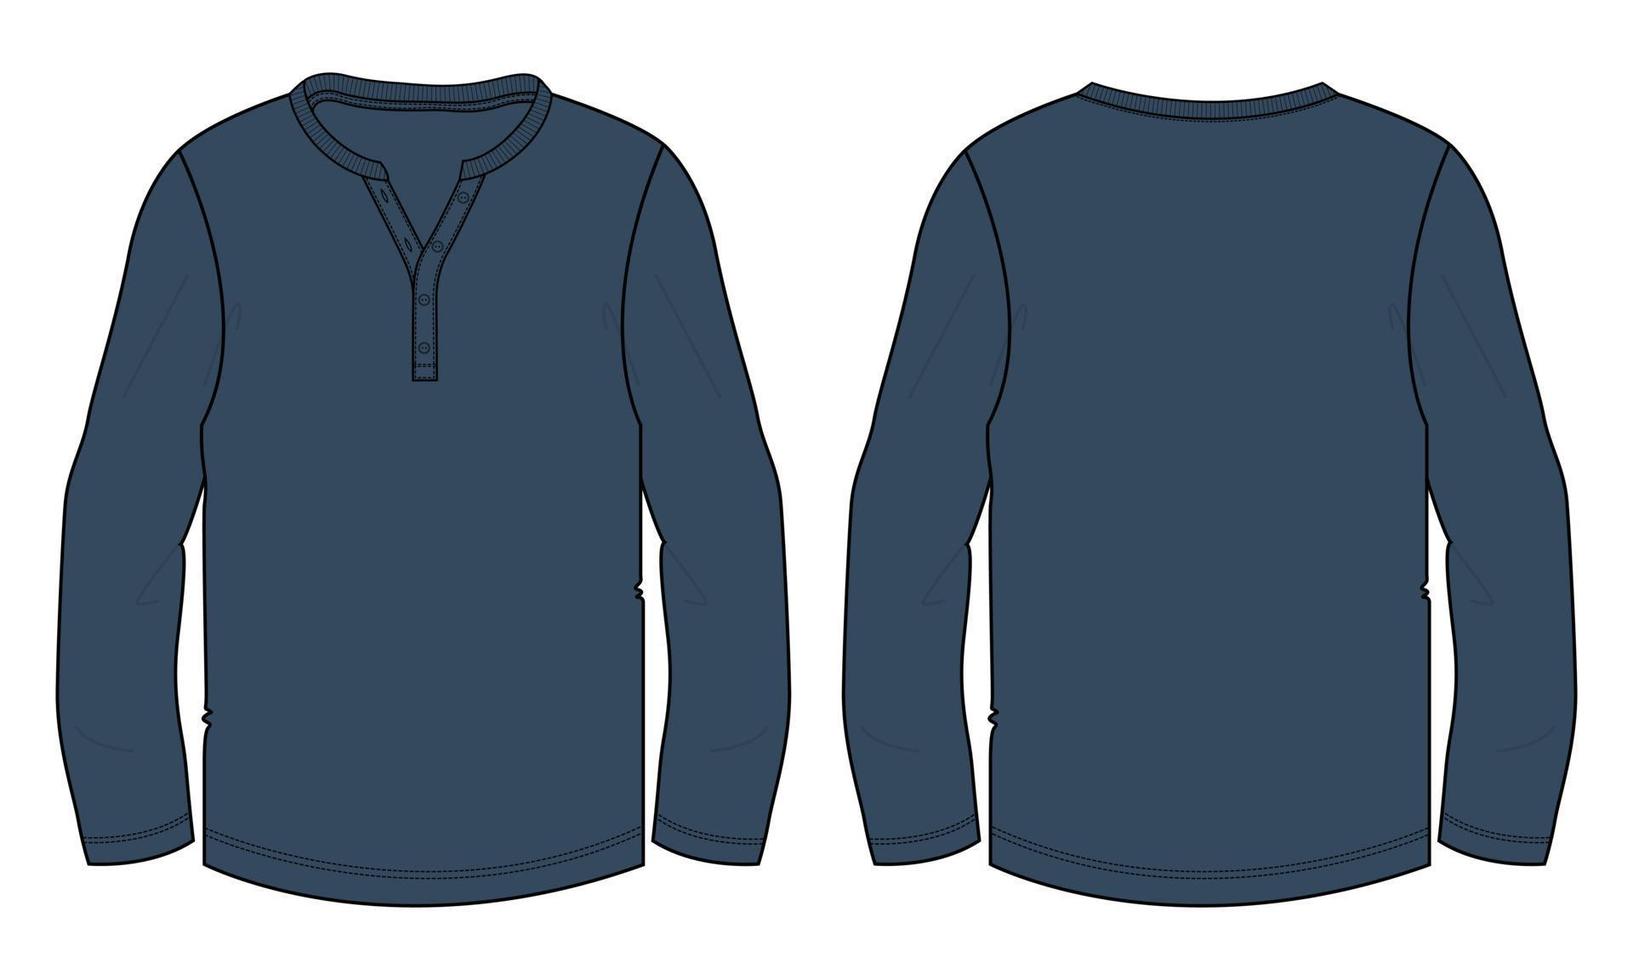 camiseta de manga larga moda técnica boceto plano ilustración vectorial plantilla de color azul marino vistas frontal y posterior vector